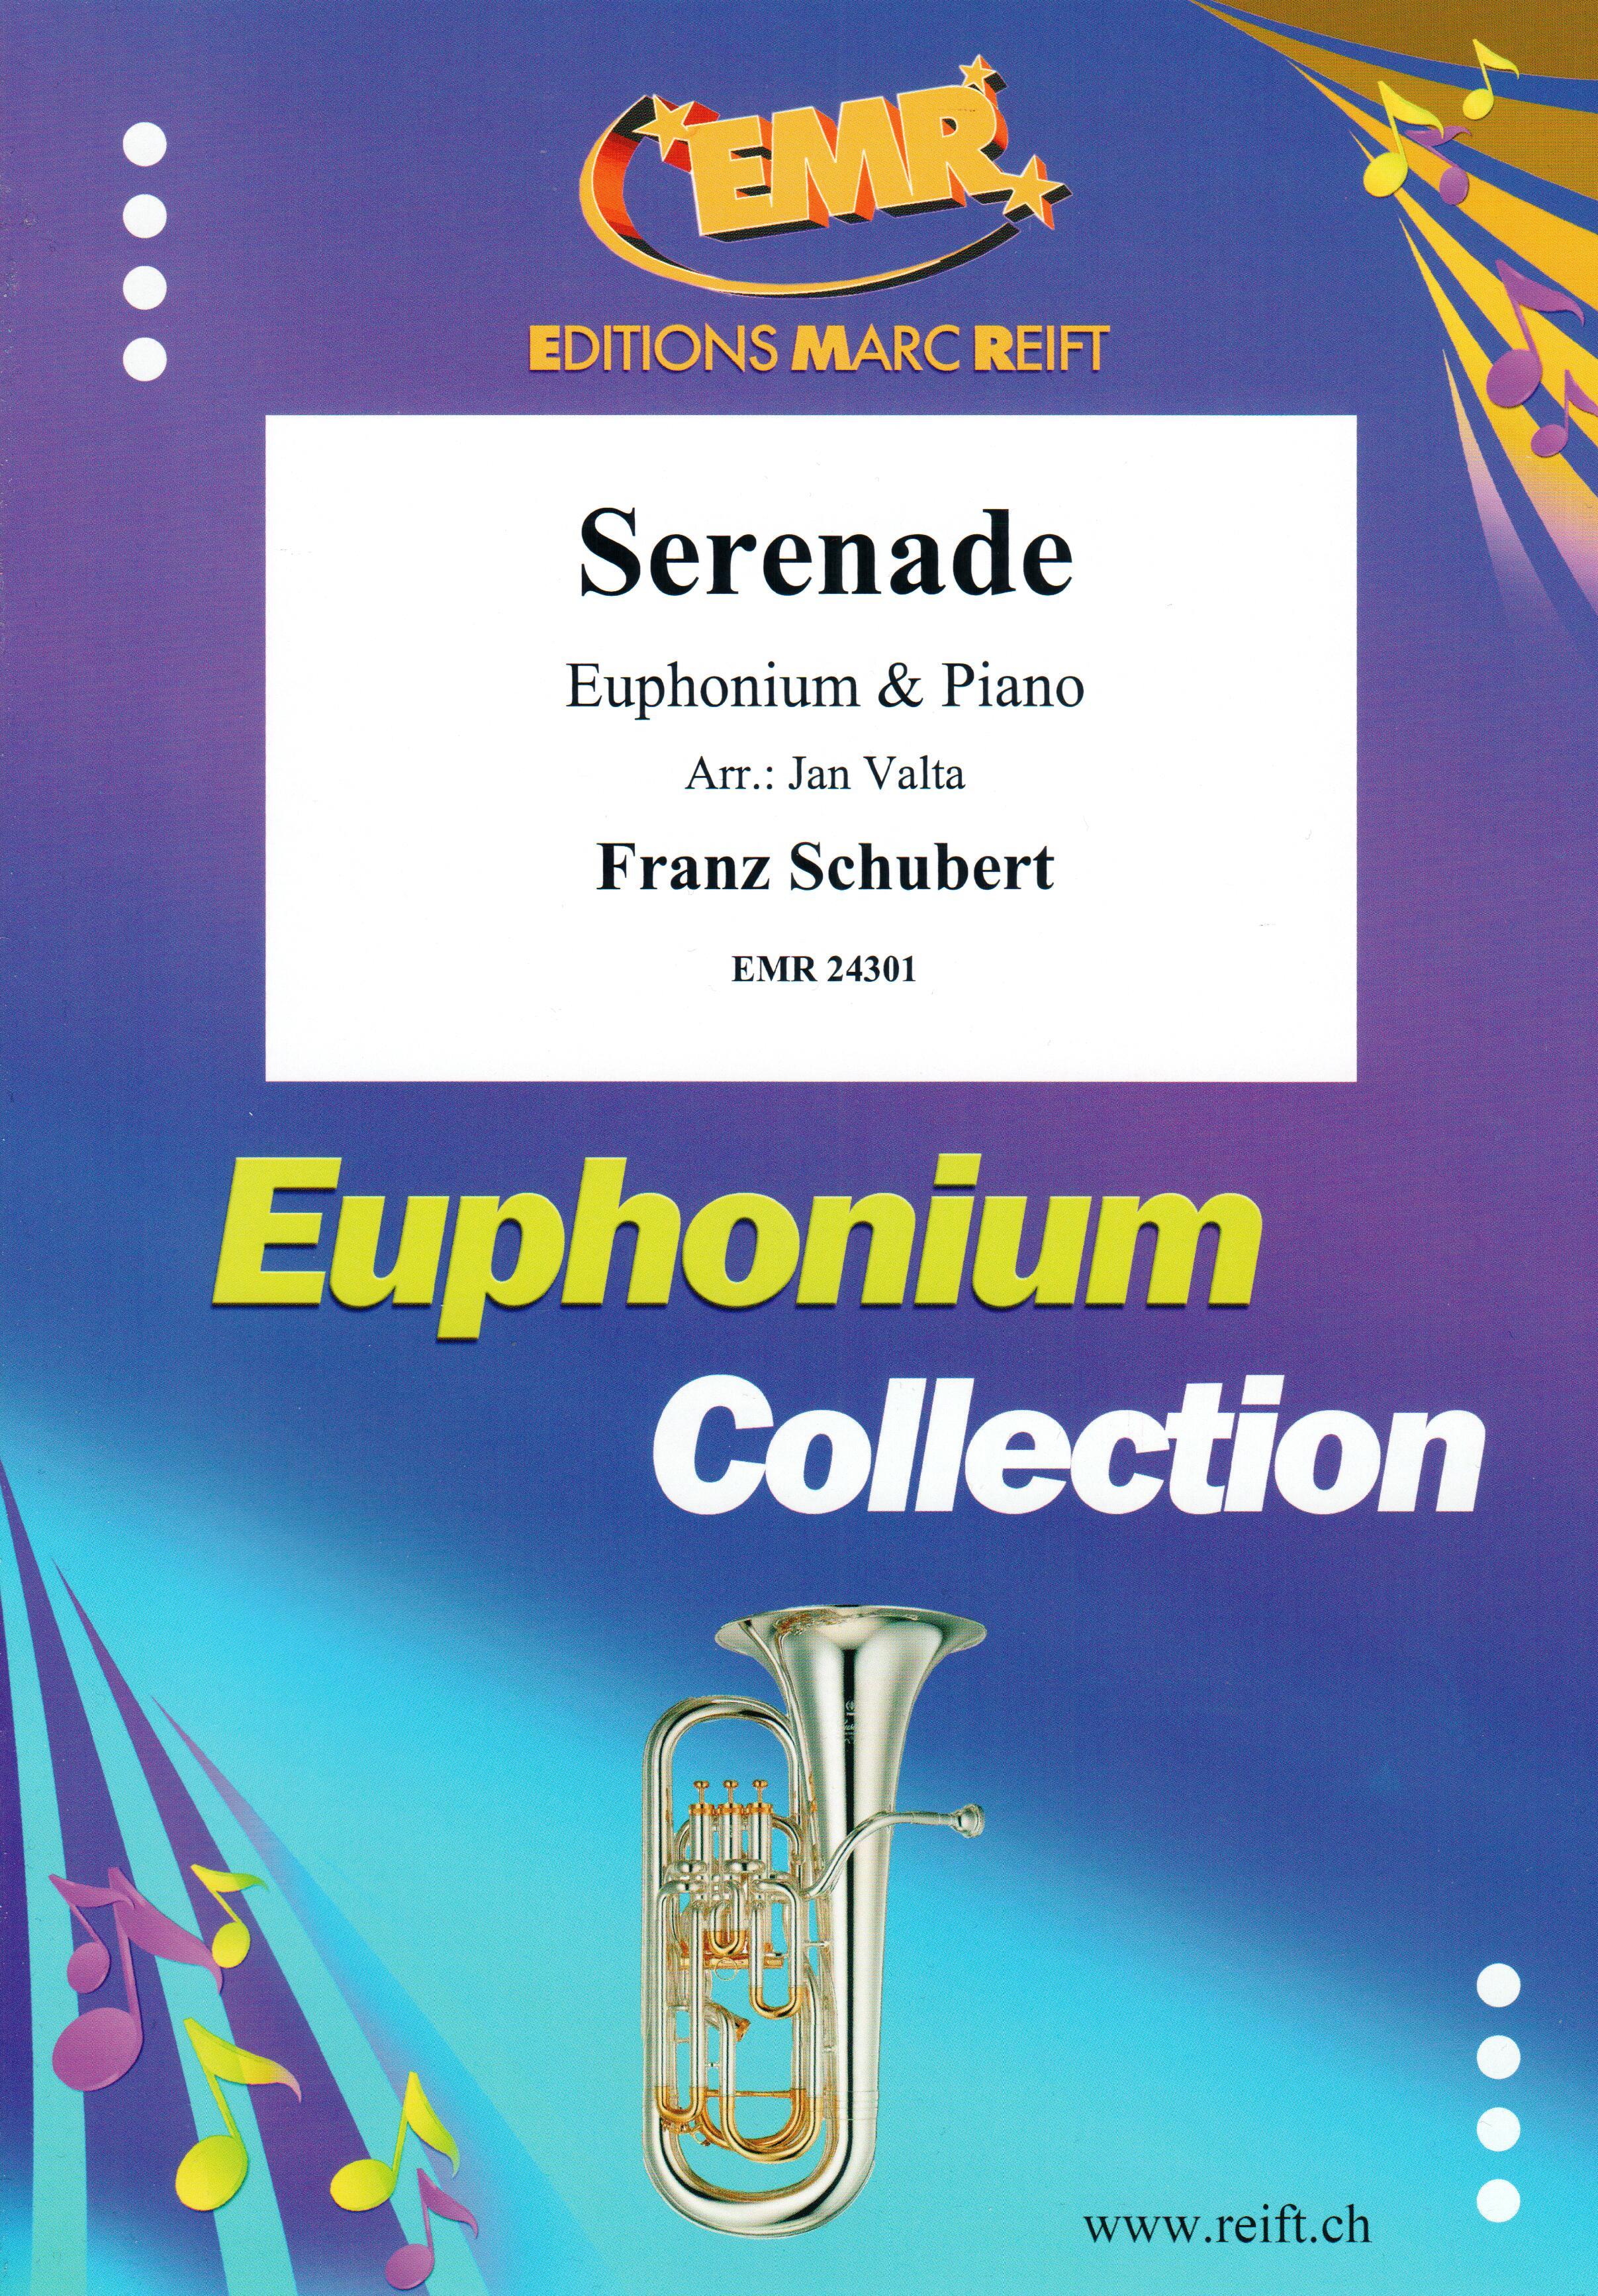 SERENADE, SOLOS - Euphonium